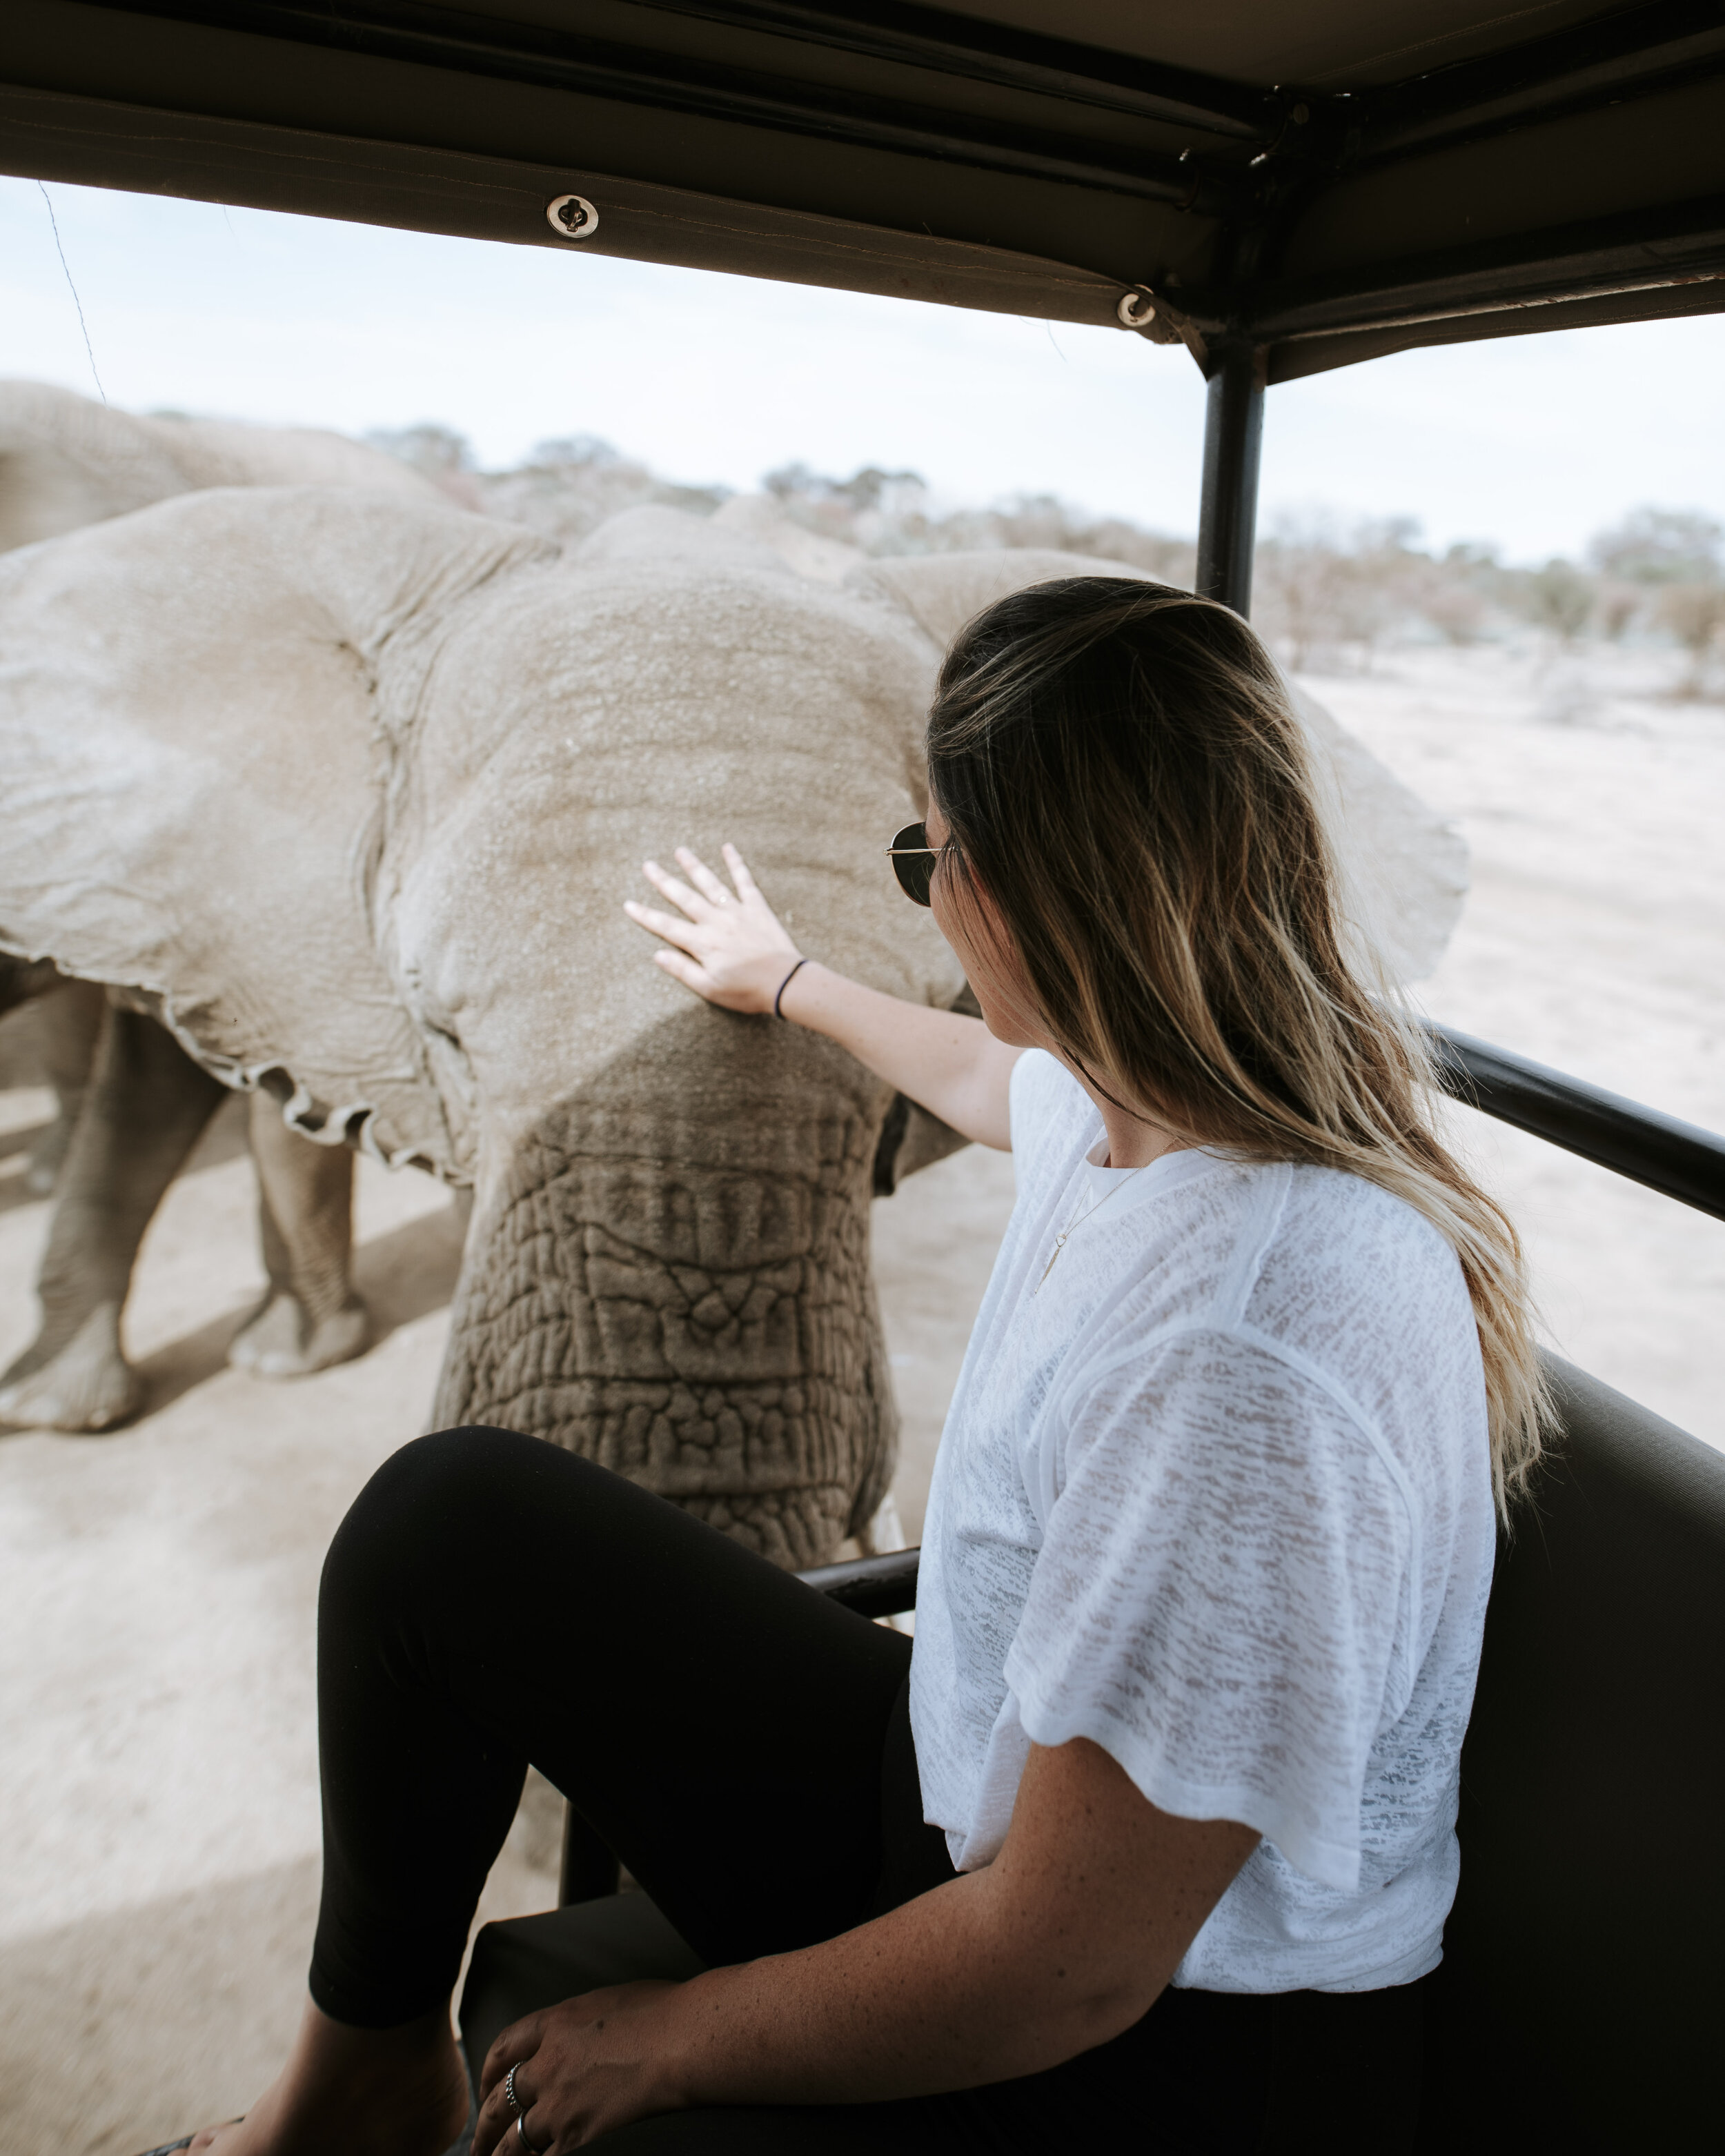 Omaruru game lodge - Elephants - Namibia Road Trip Itinerary